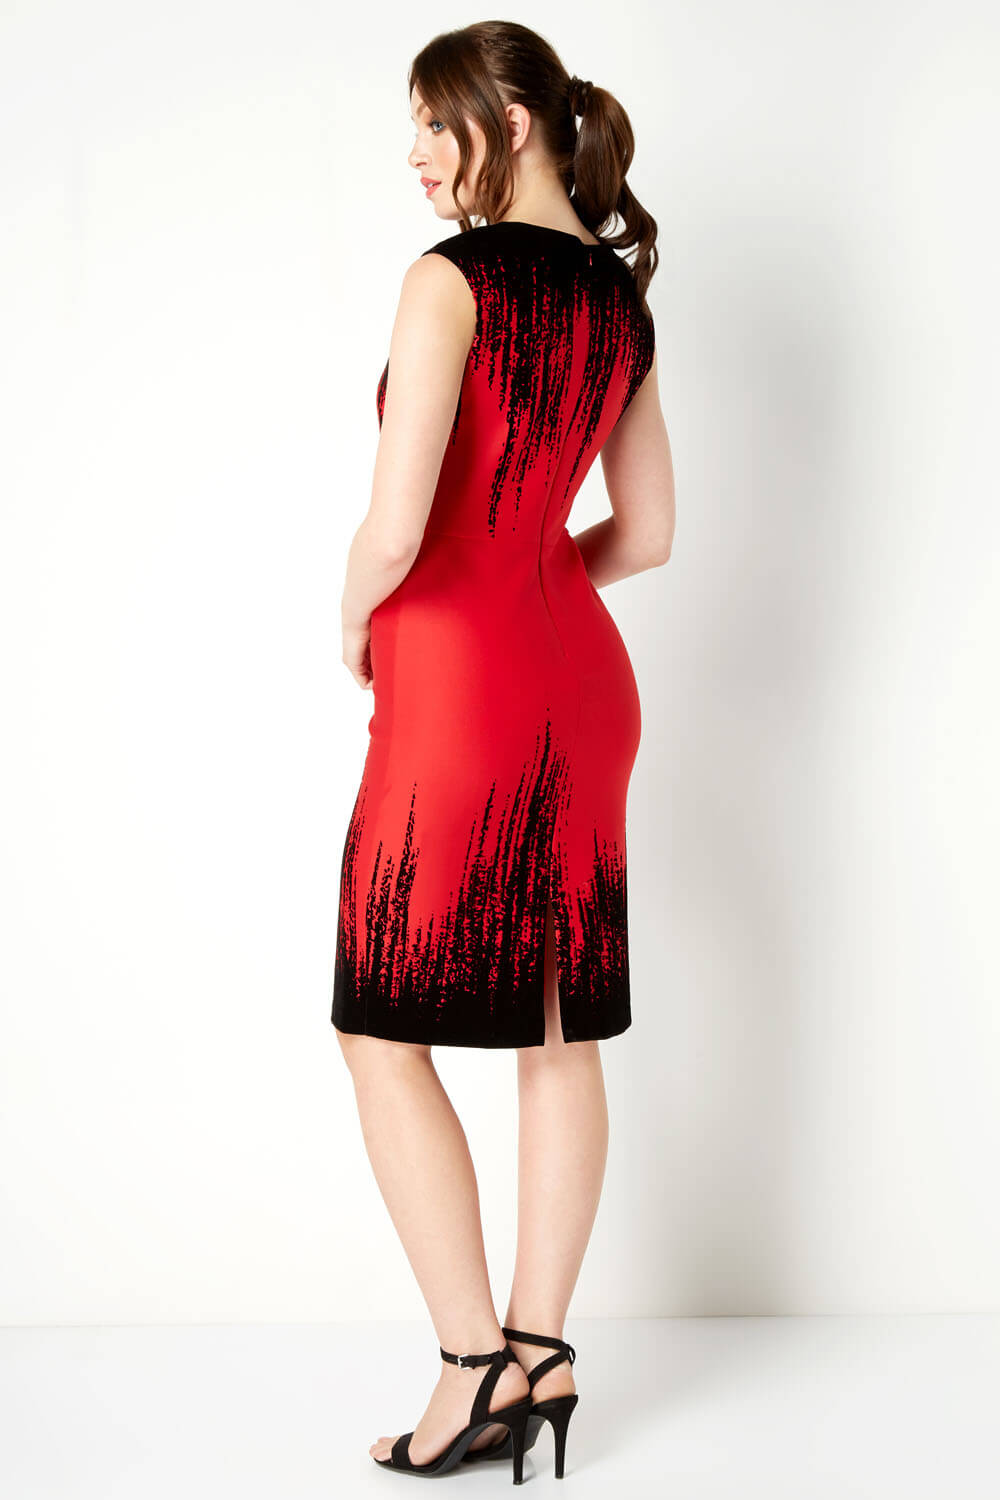 Red Flocking Detail Dress, Image 3 of 4